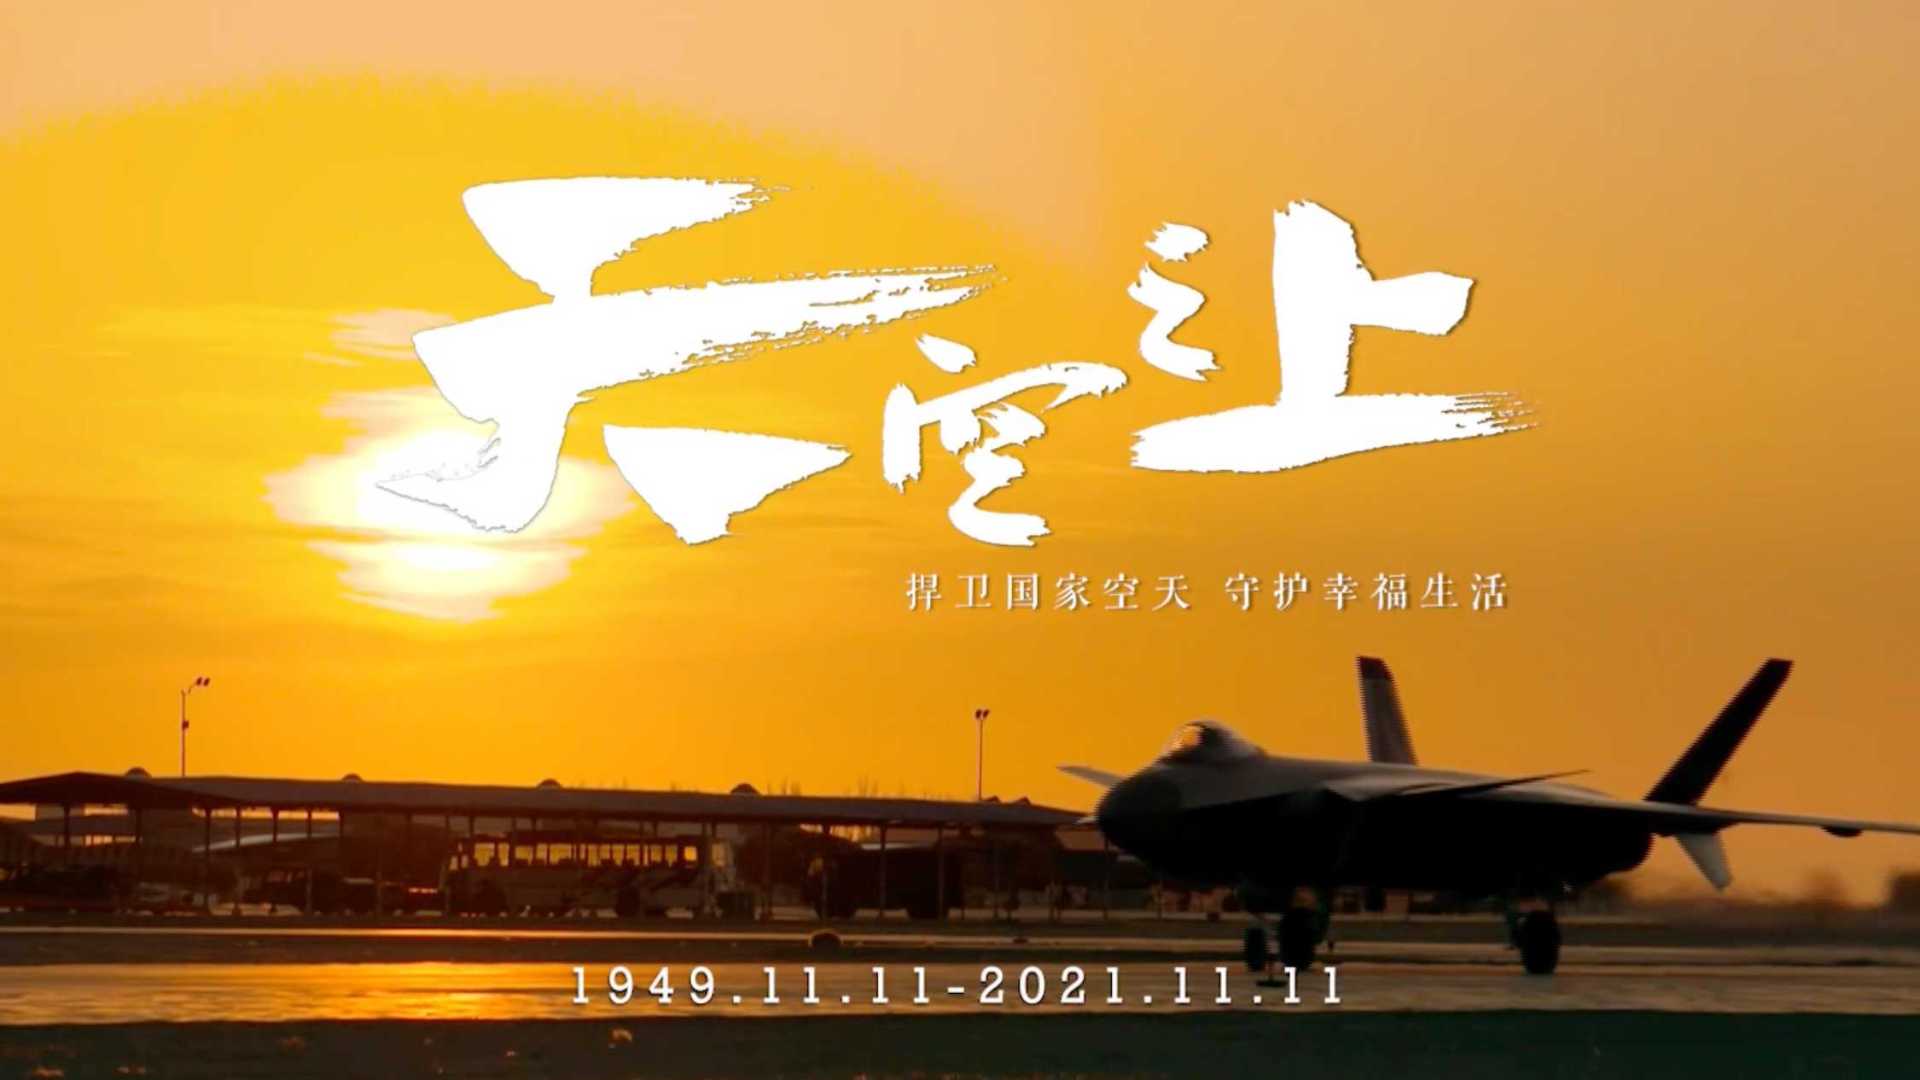 中国空军11.11《天空之上》